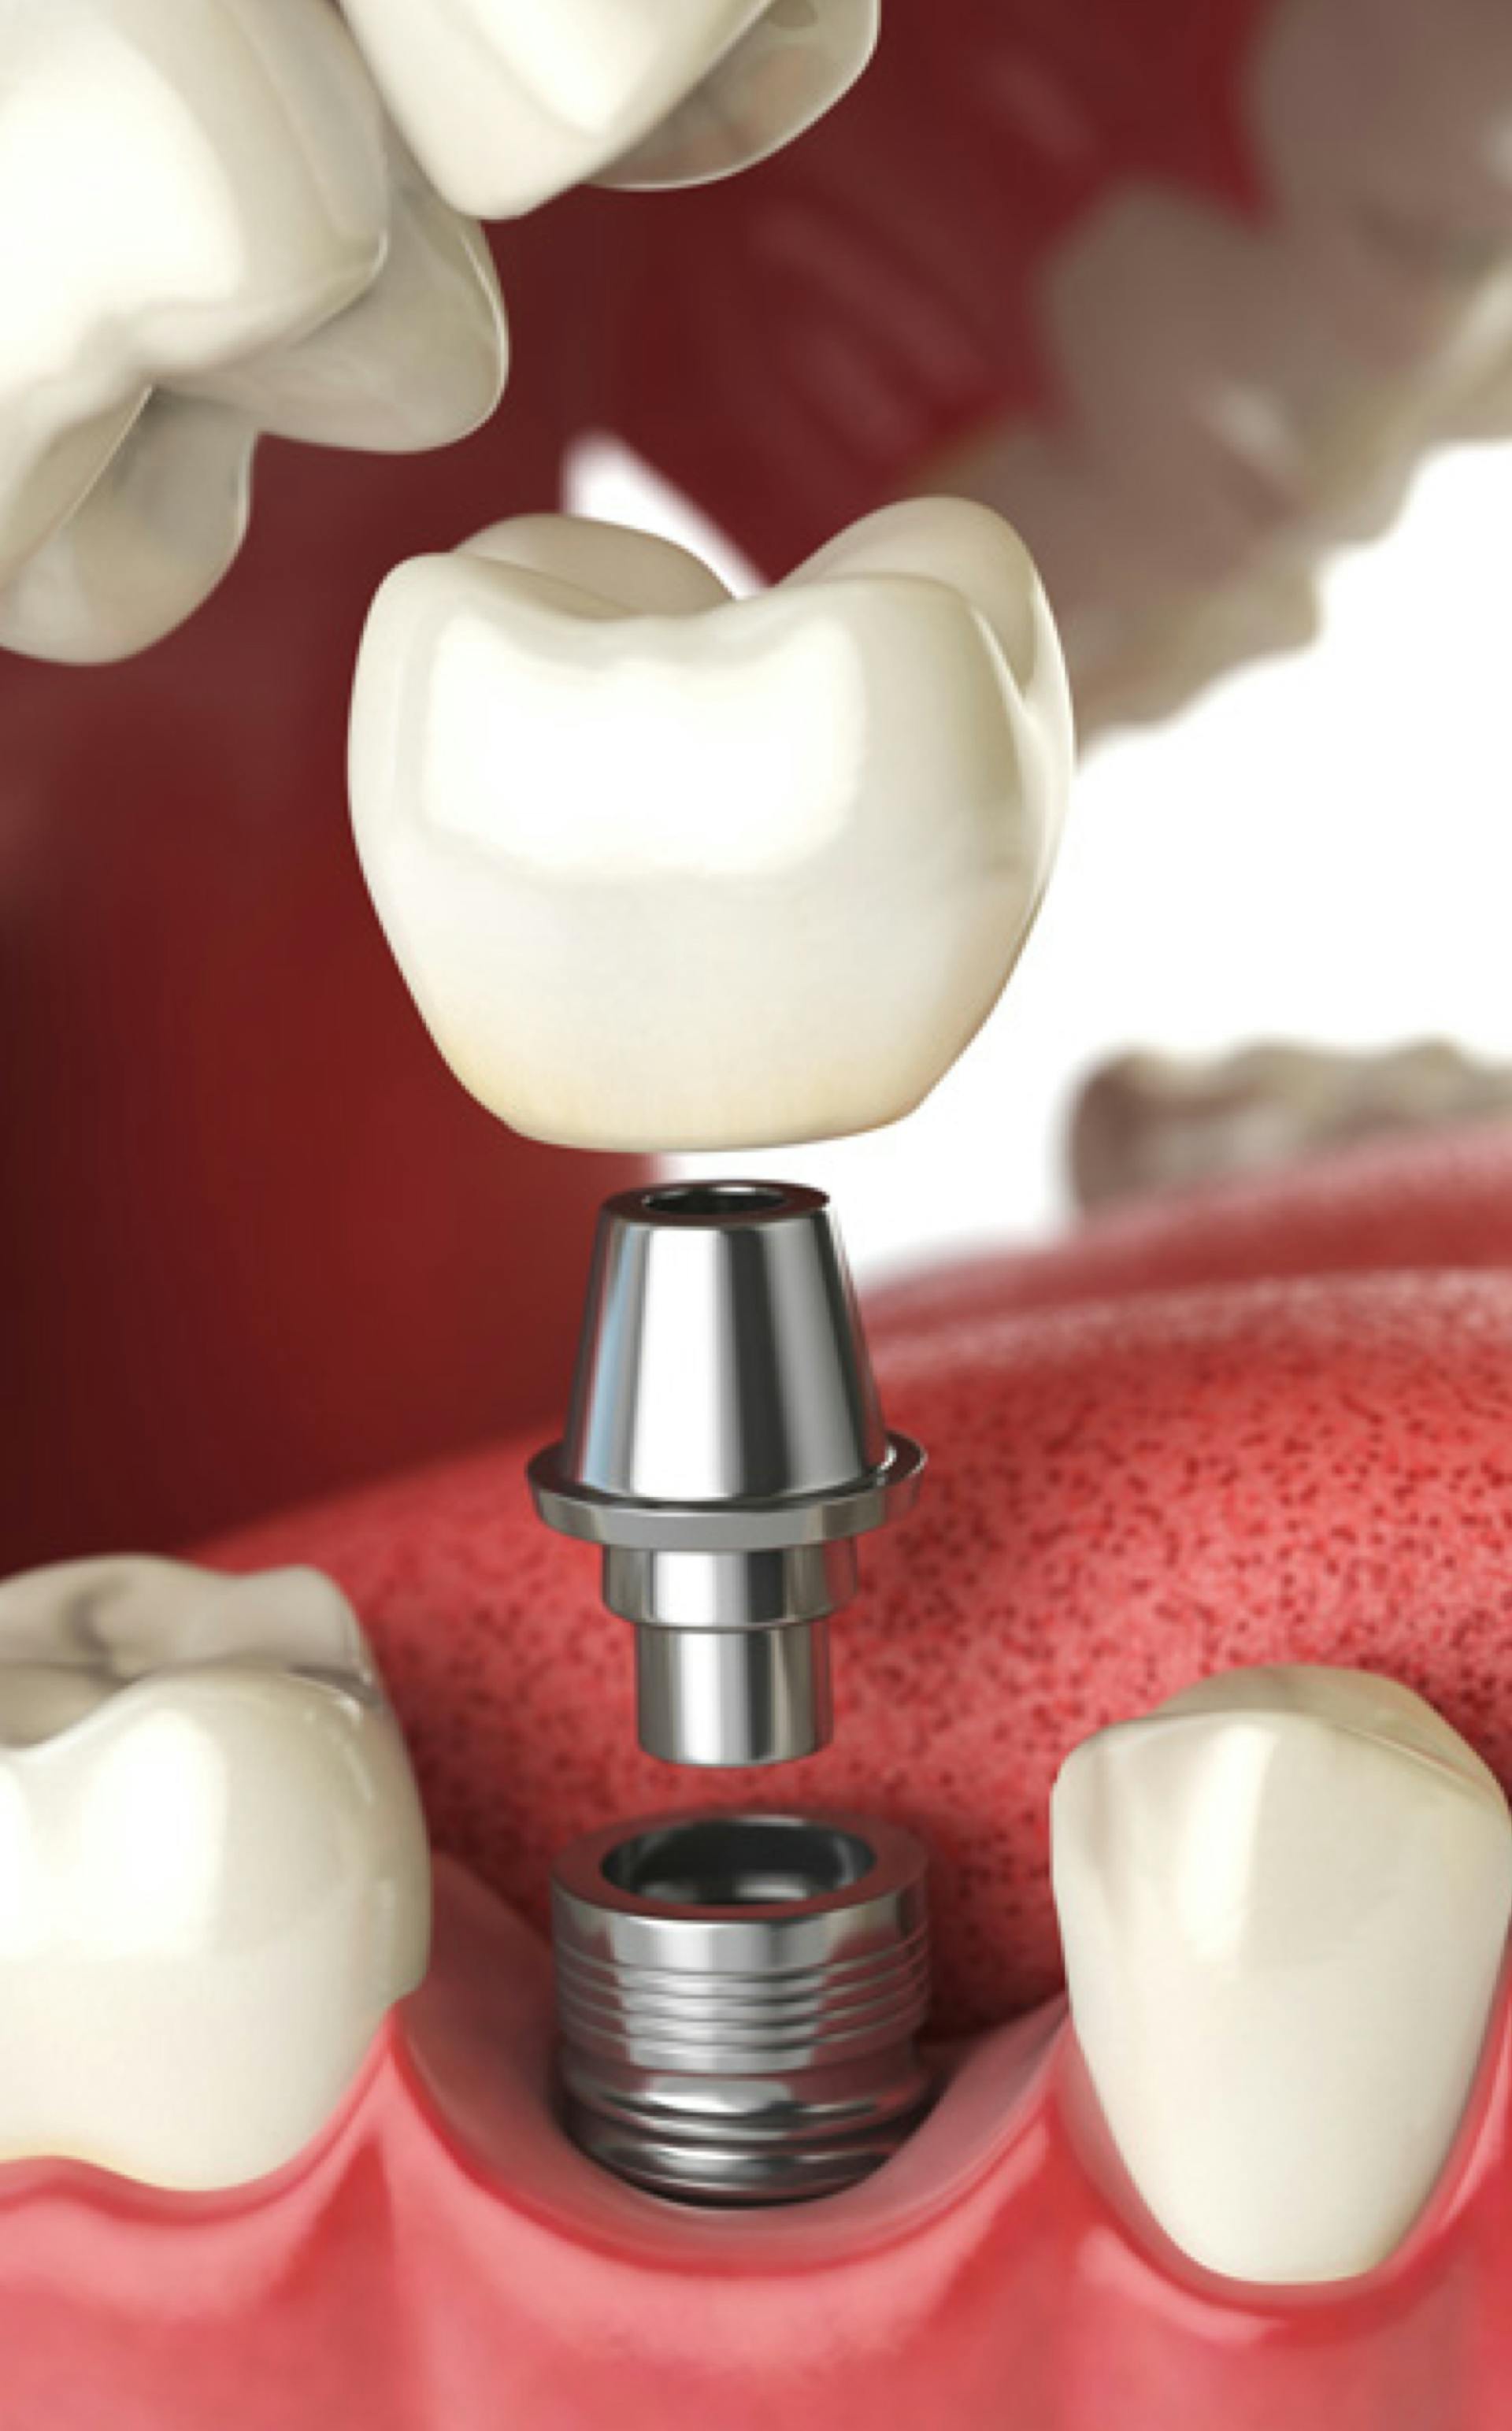 L'implantologie dentaire